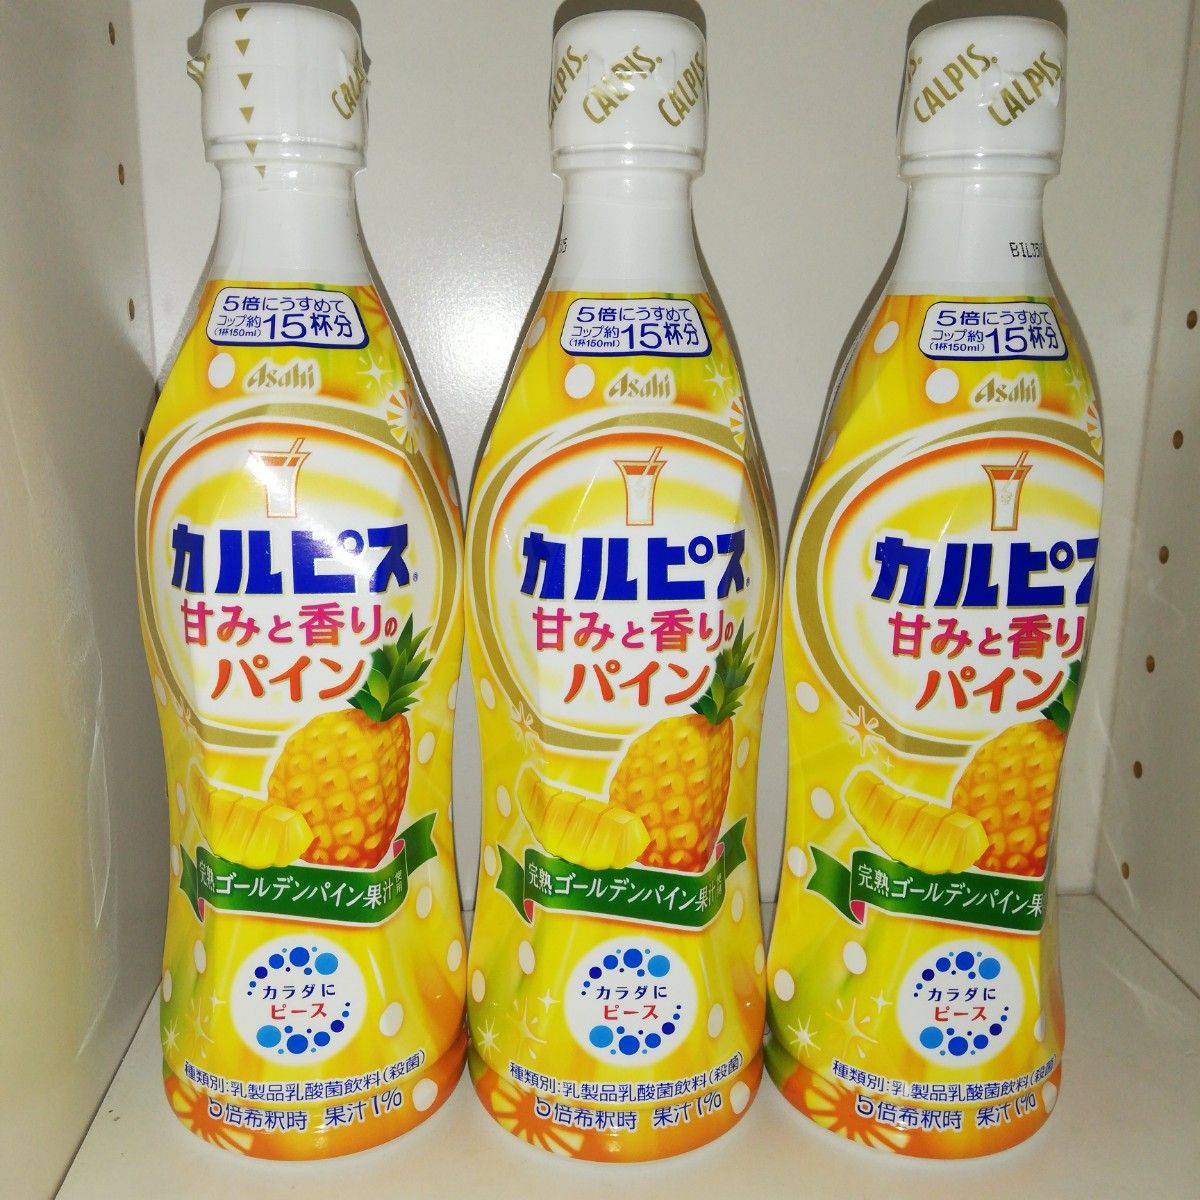 【3本セット】カルピス 甘みと香りのパイン 希釈用470ml アサヒ飲料株式会社